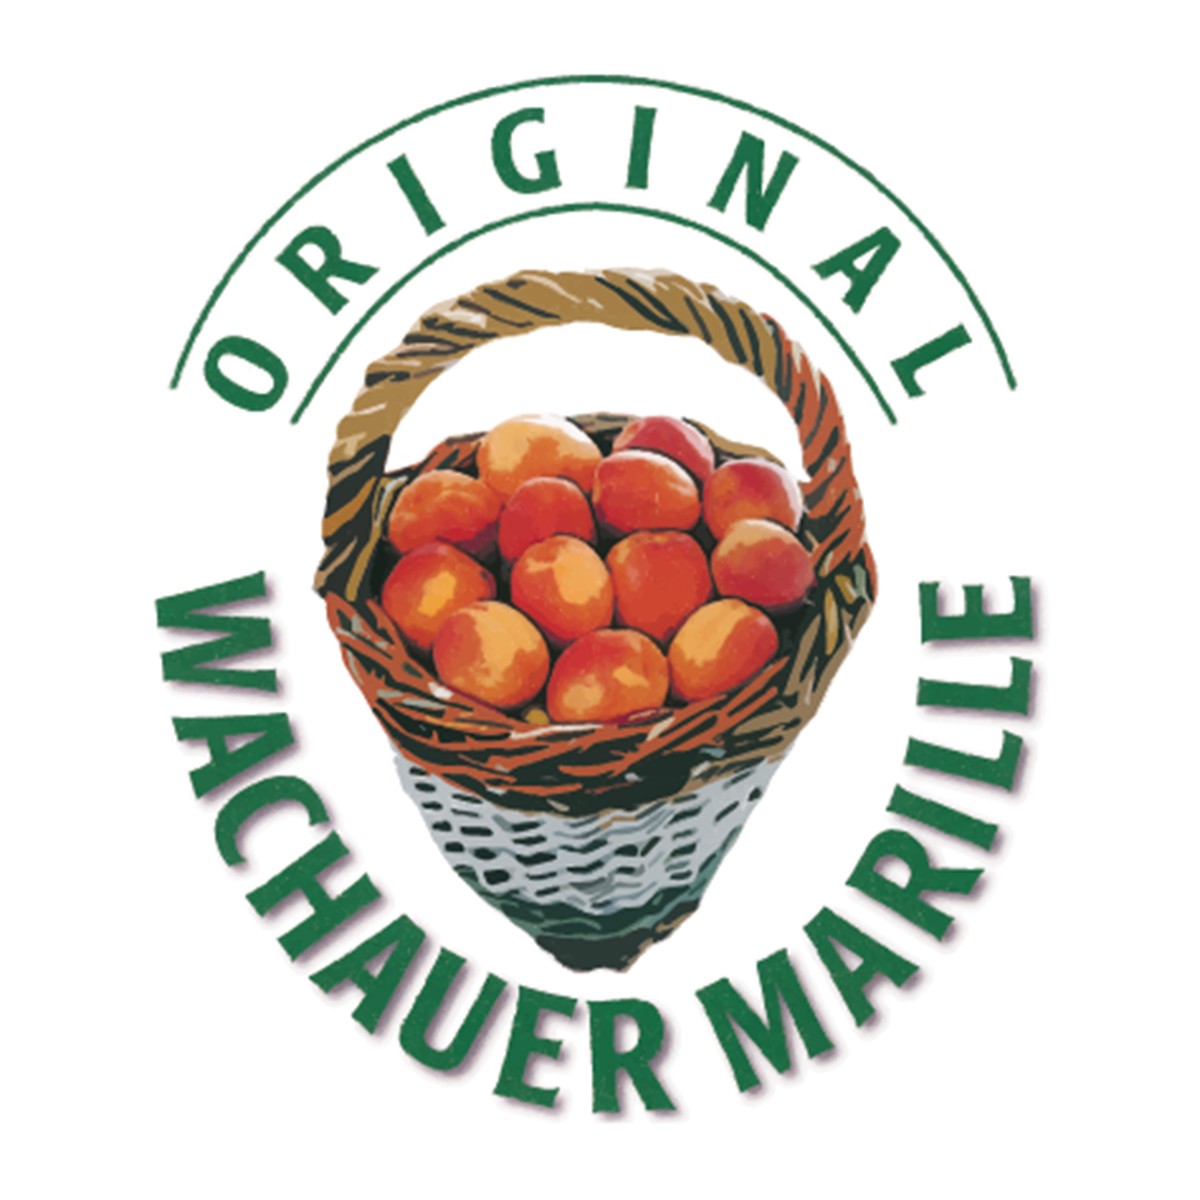 Seit 1996 ist die Wachauer Marille mit einem Gütesiegel geschützt: Seit 1996 ist die Wachauer Marille mit einem Gütesiegel geschützt